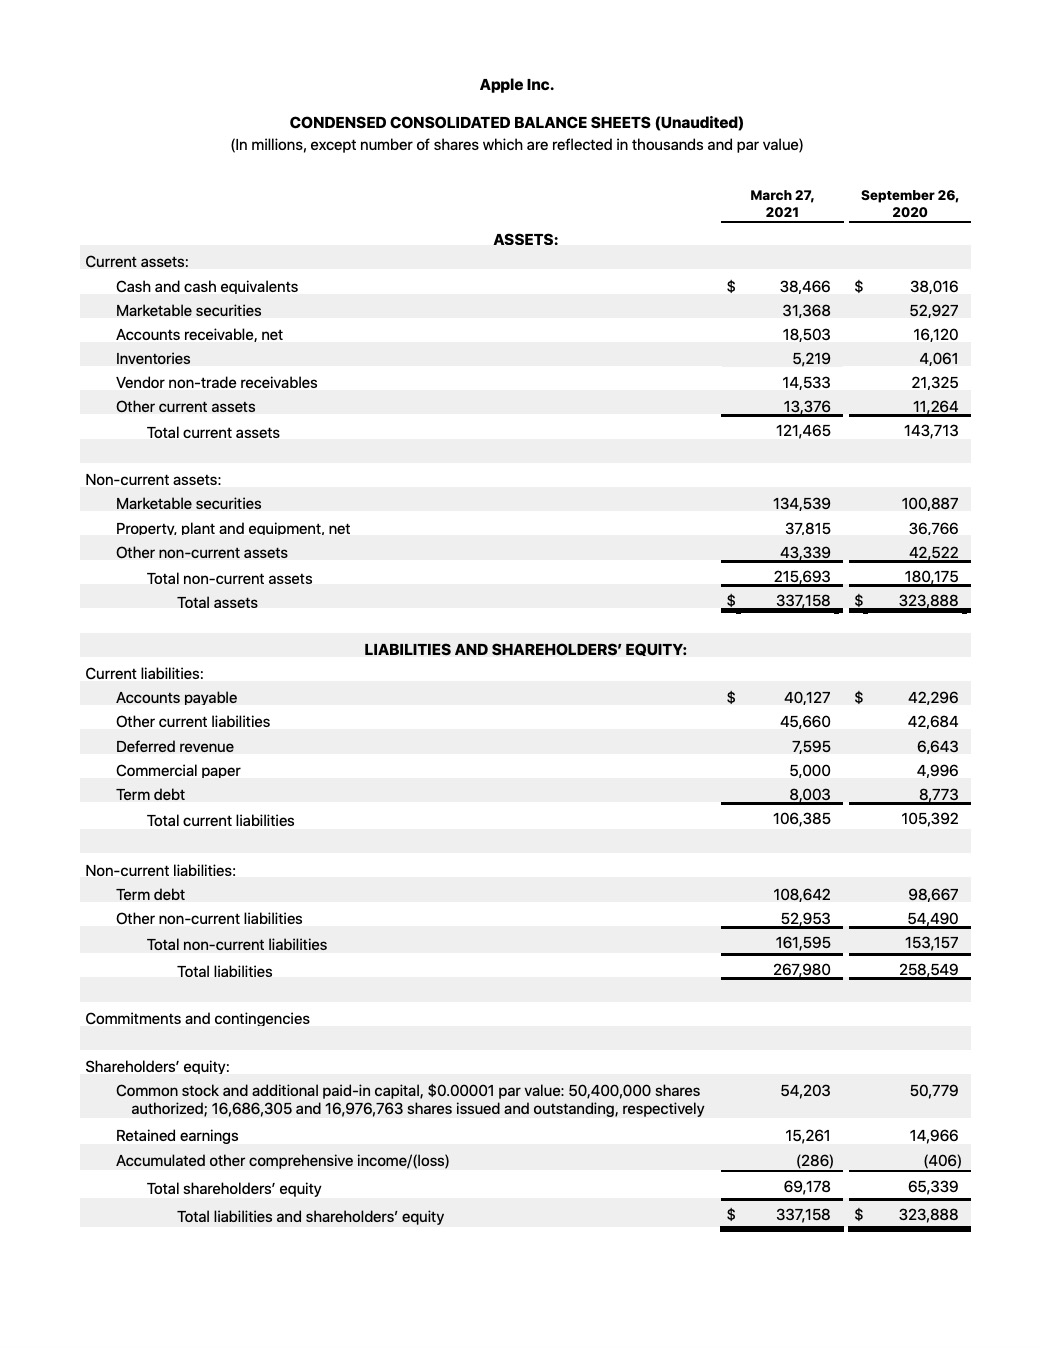 Apple Reports Q2 FY21 Earnings: $89.6 Billion in Revenue, $23.6 Billion in Net Income [Chart]